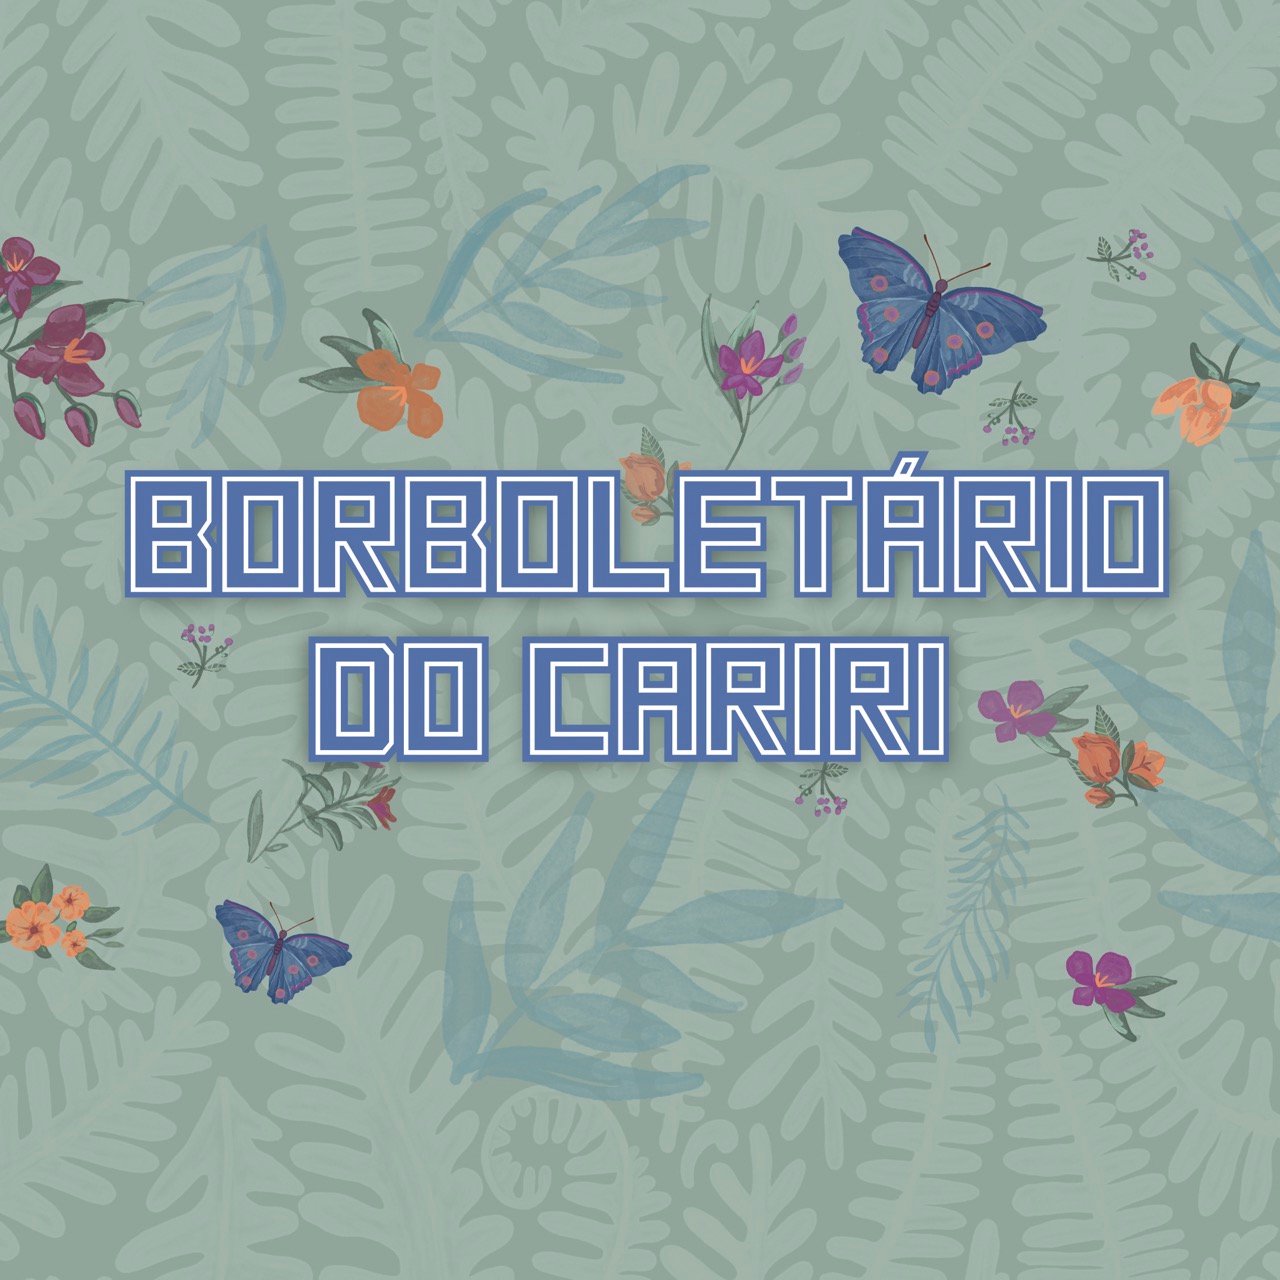 banners-borboletario-02-grande